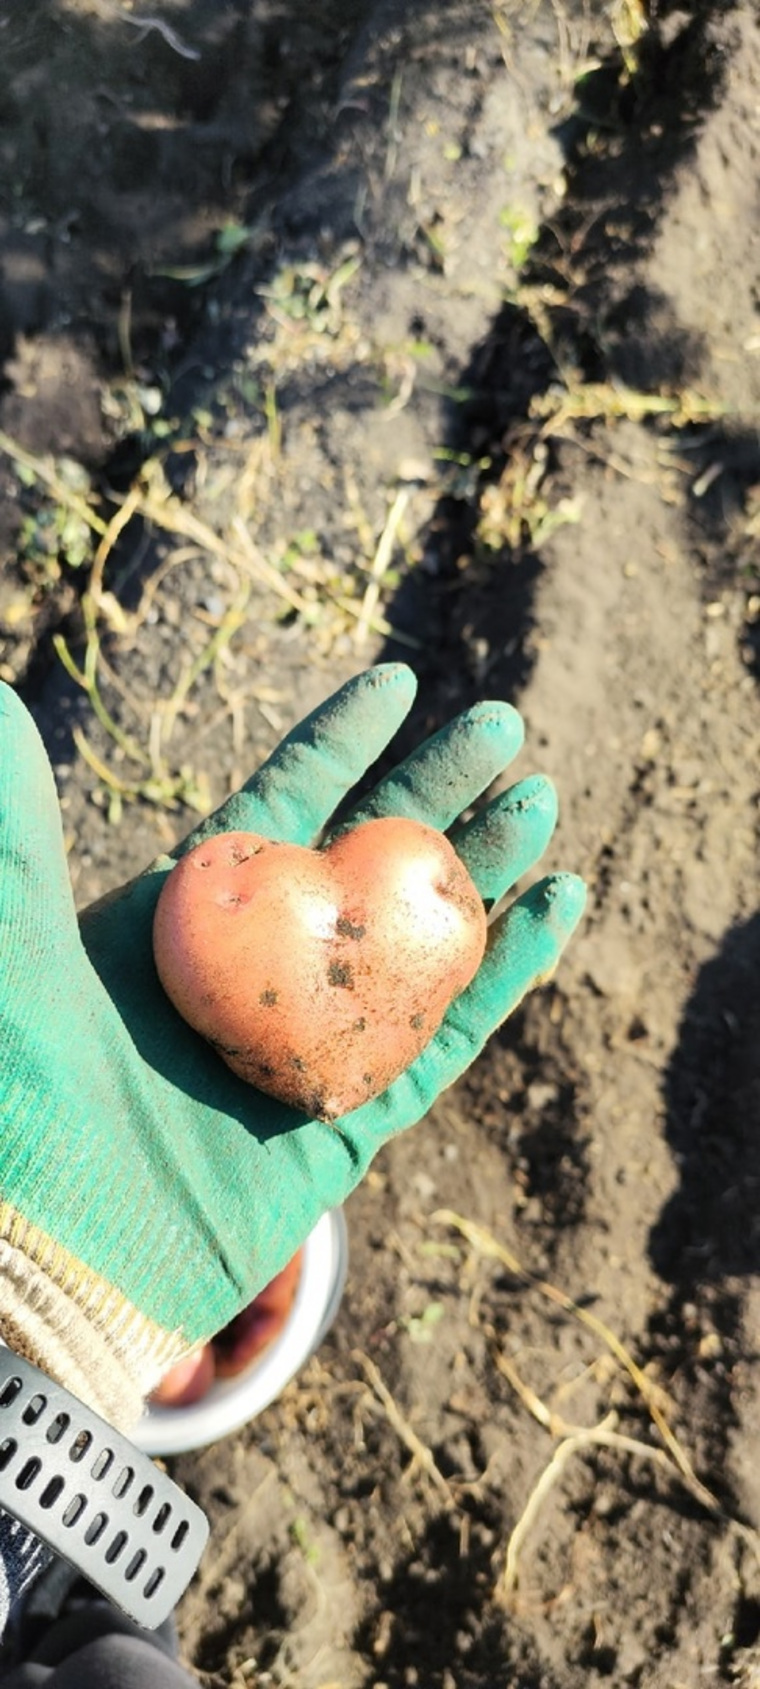 Курганцы делятся снимками картофеля в форме сердца